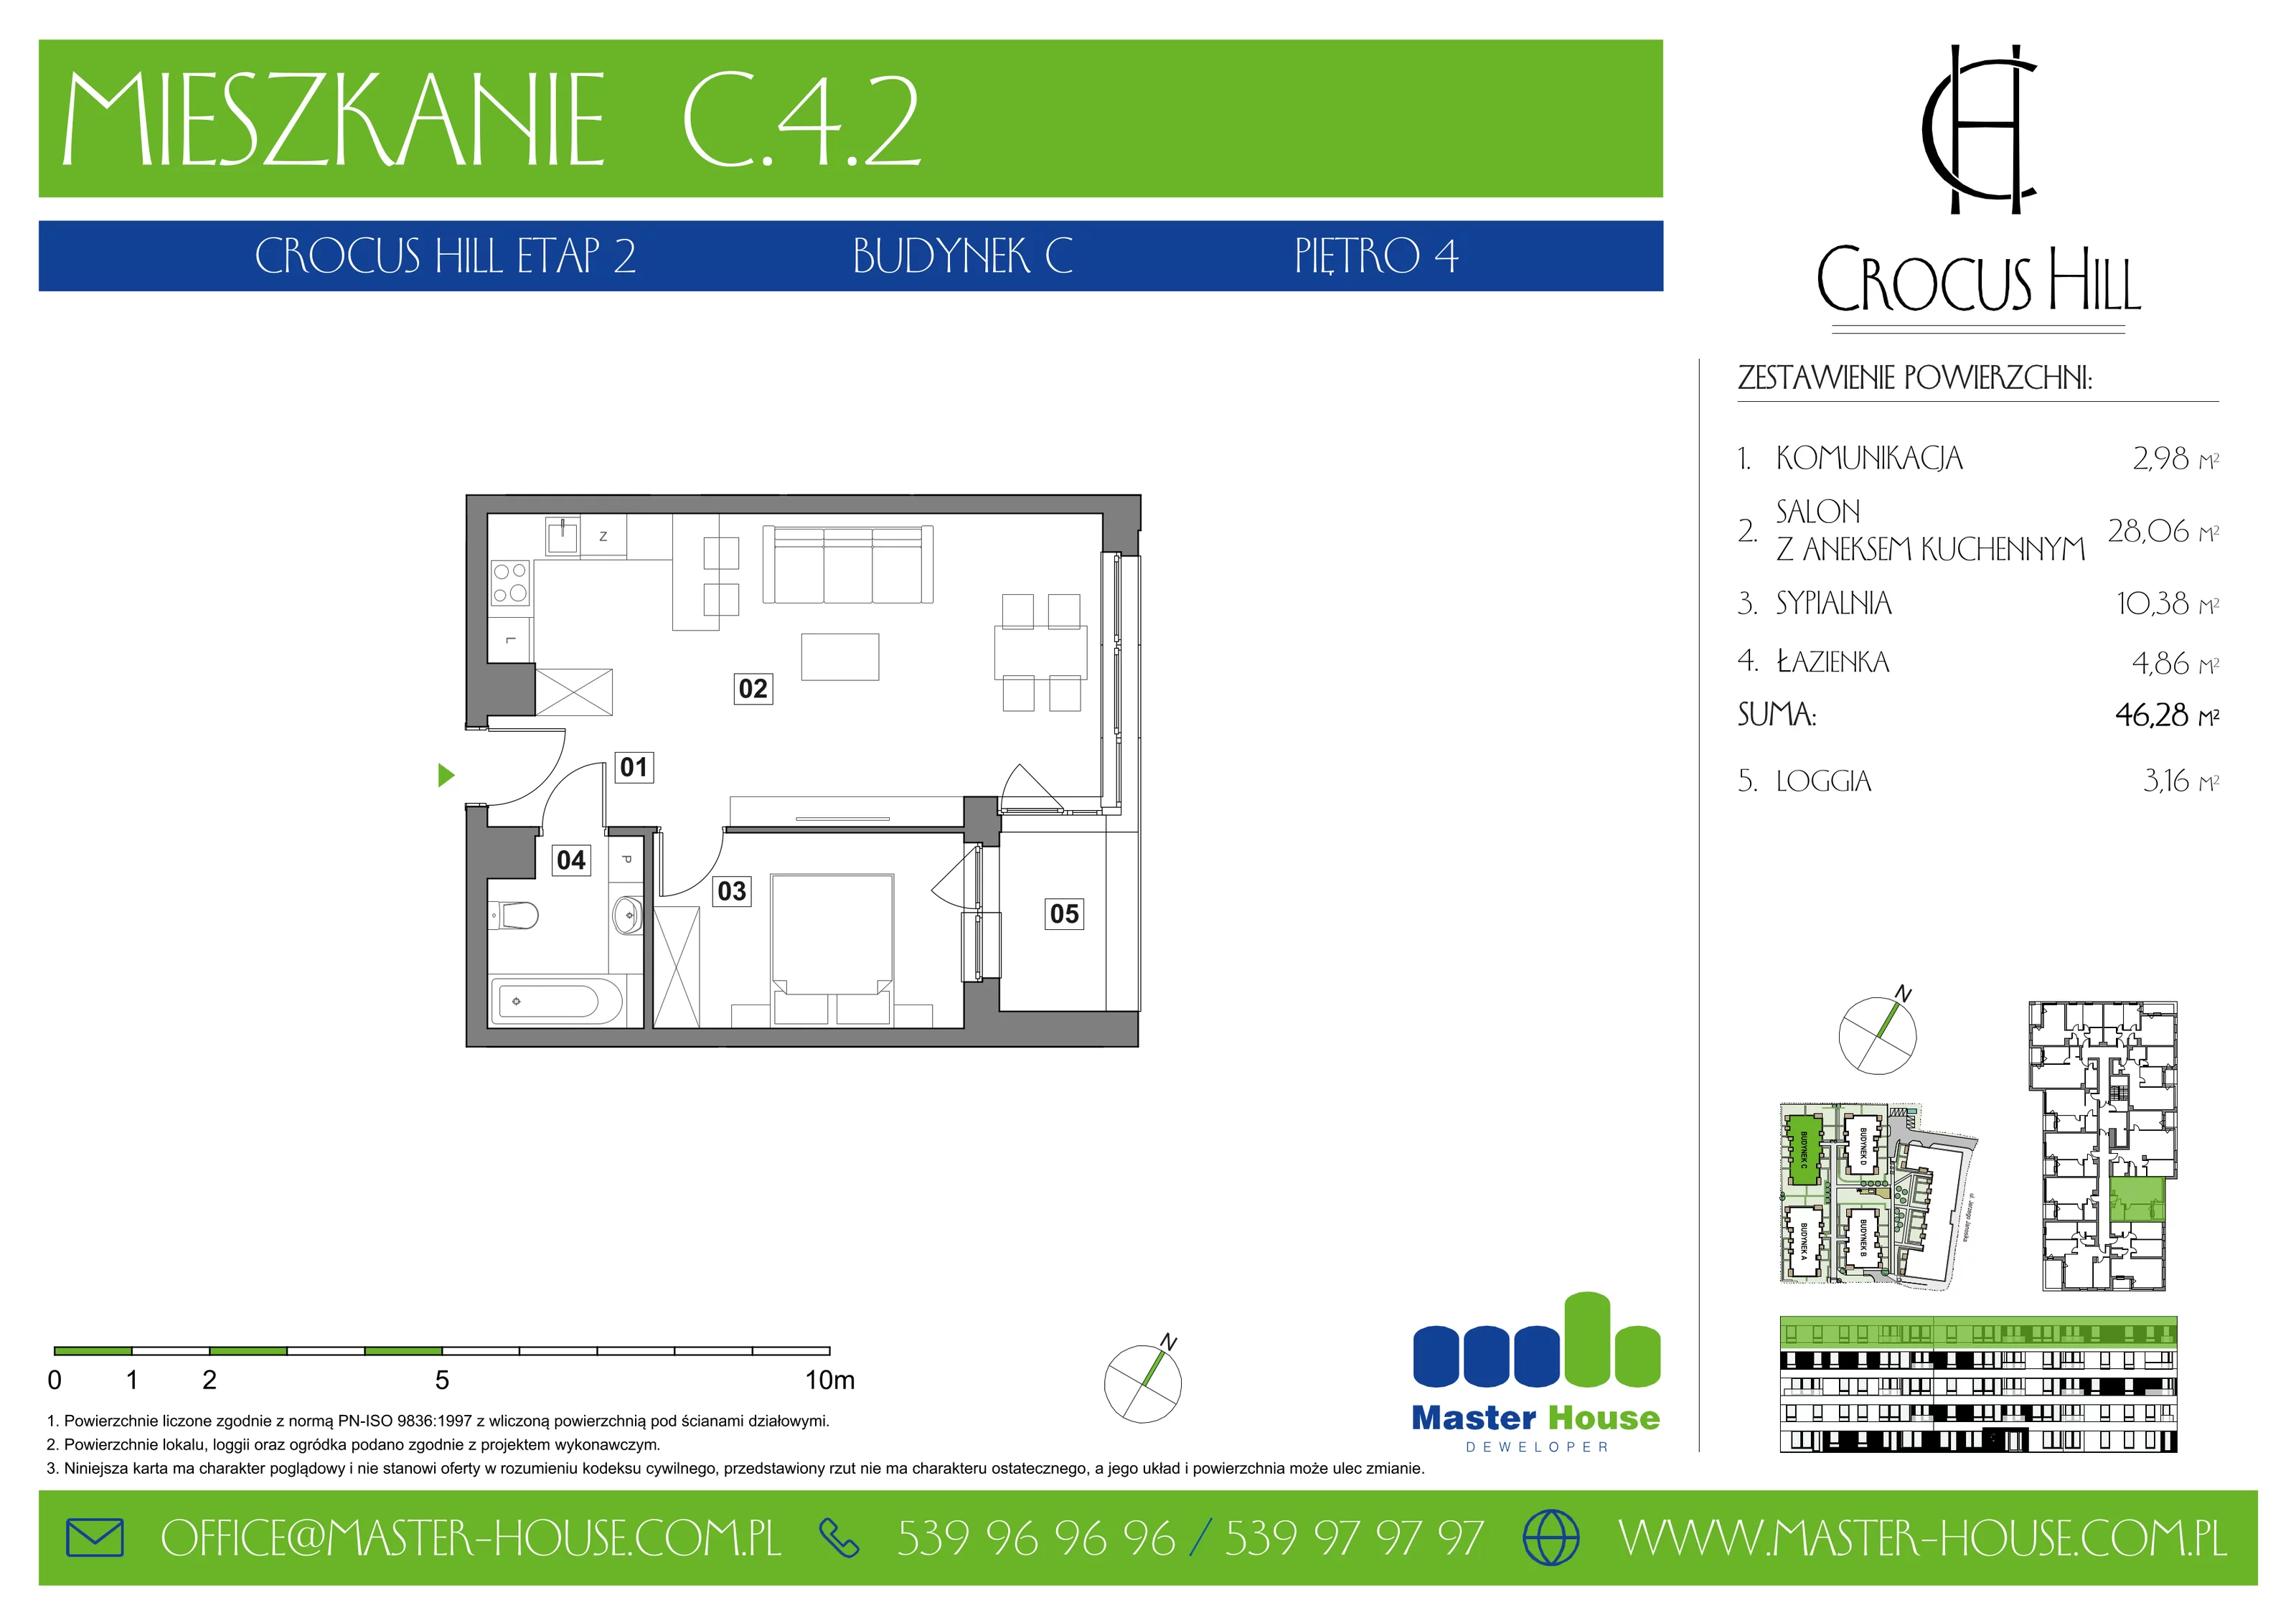 Mieszkanie 46,28 m², piętro 4, oferta nr C.4.2, Crocus Hill, Szczecin, Śródmieście, ul. Jerzego Janosika 2, 2A, 3, 3A